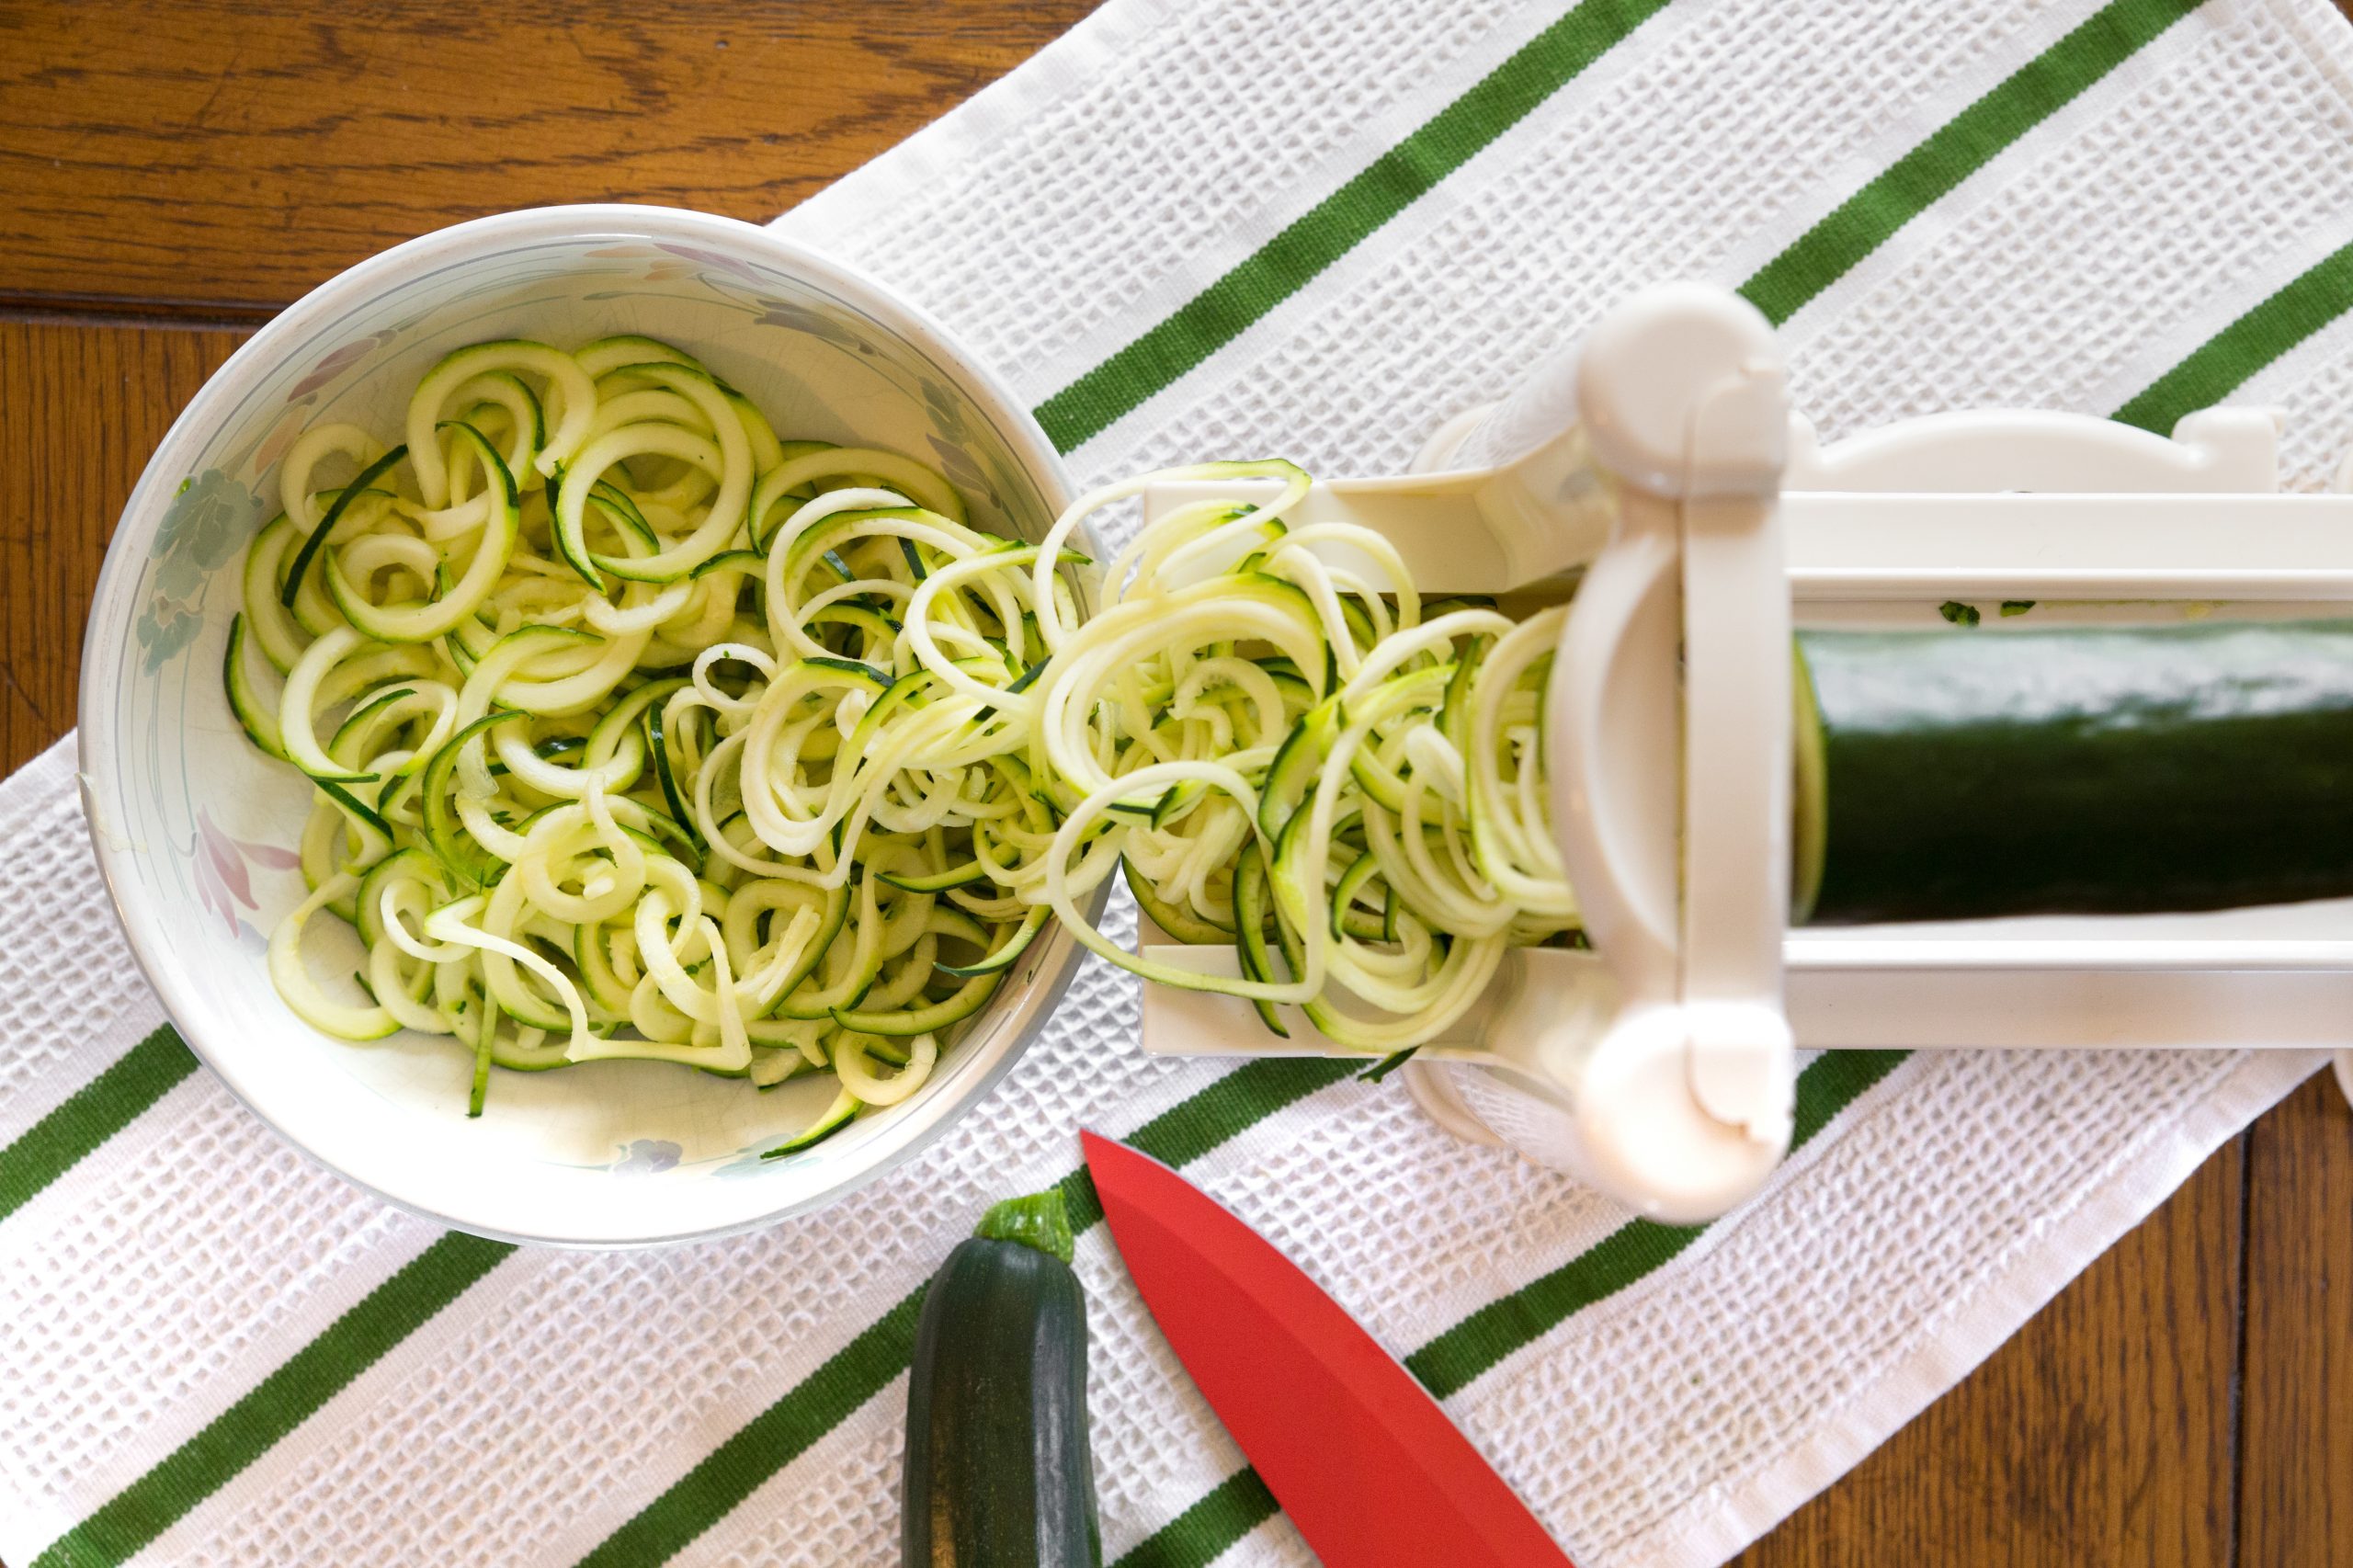 Fullstar Vegetable Spiralizer Vegetable Slicer - 4 in 1 Zucchini Spaghetti Maker